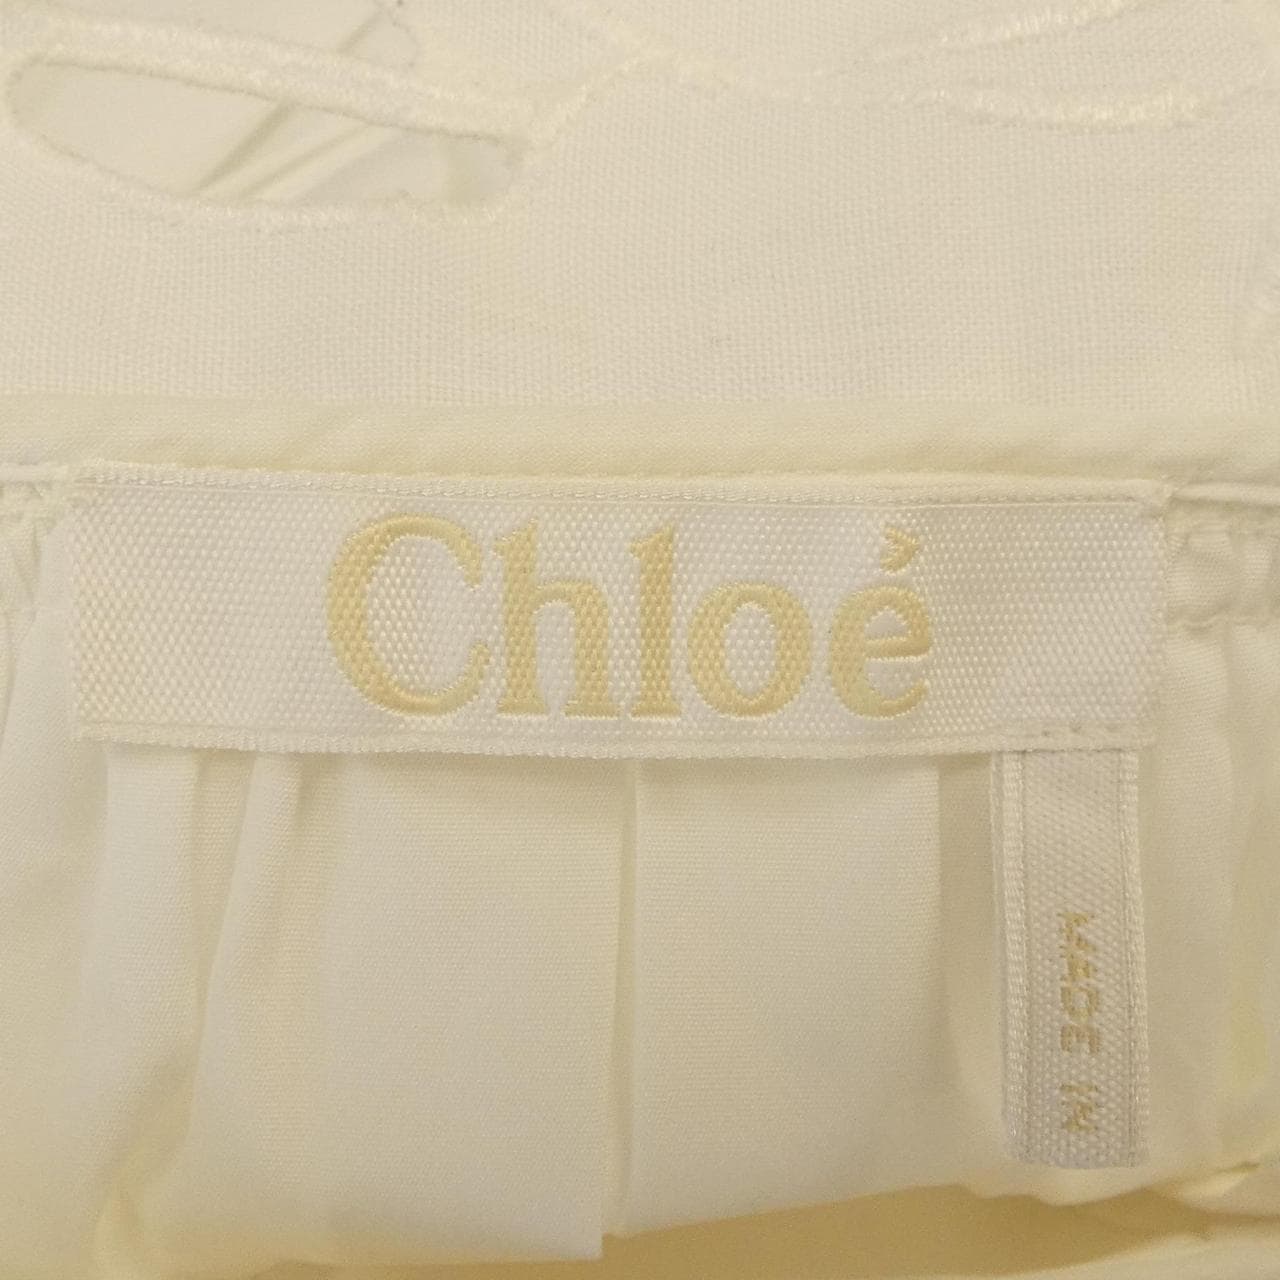 Chloe top